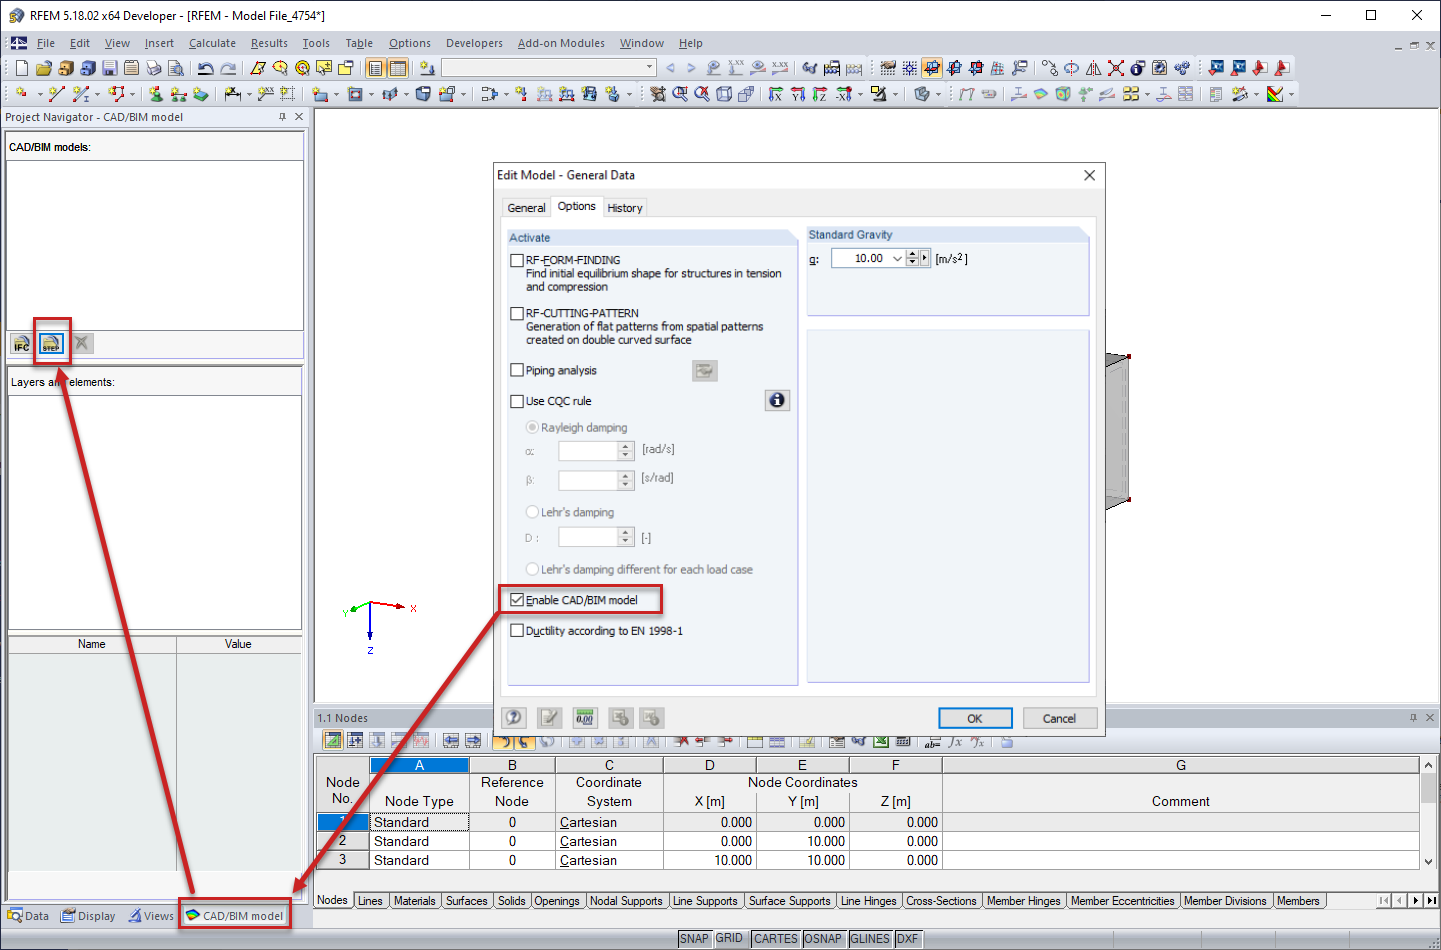 Aktivierung des CAD/BIM-Modells für den Import der STEP-Datei aus Autodesk Inventor